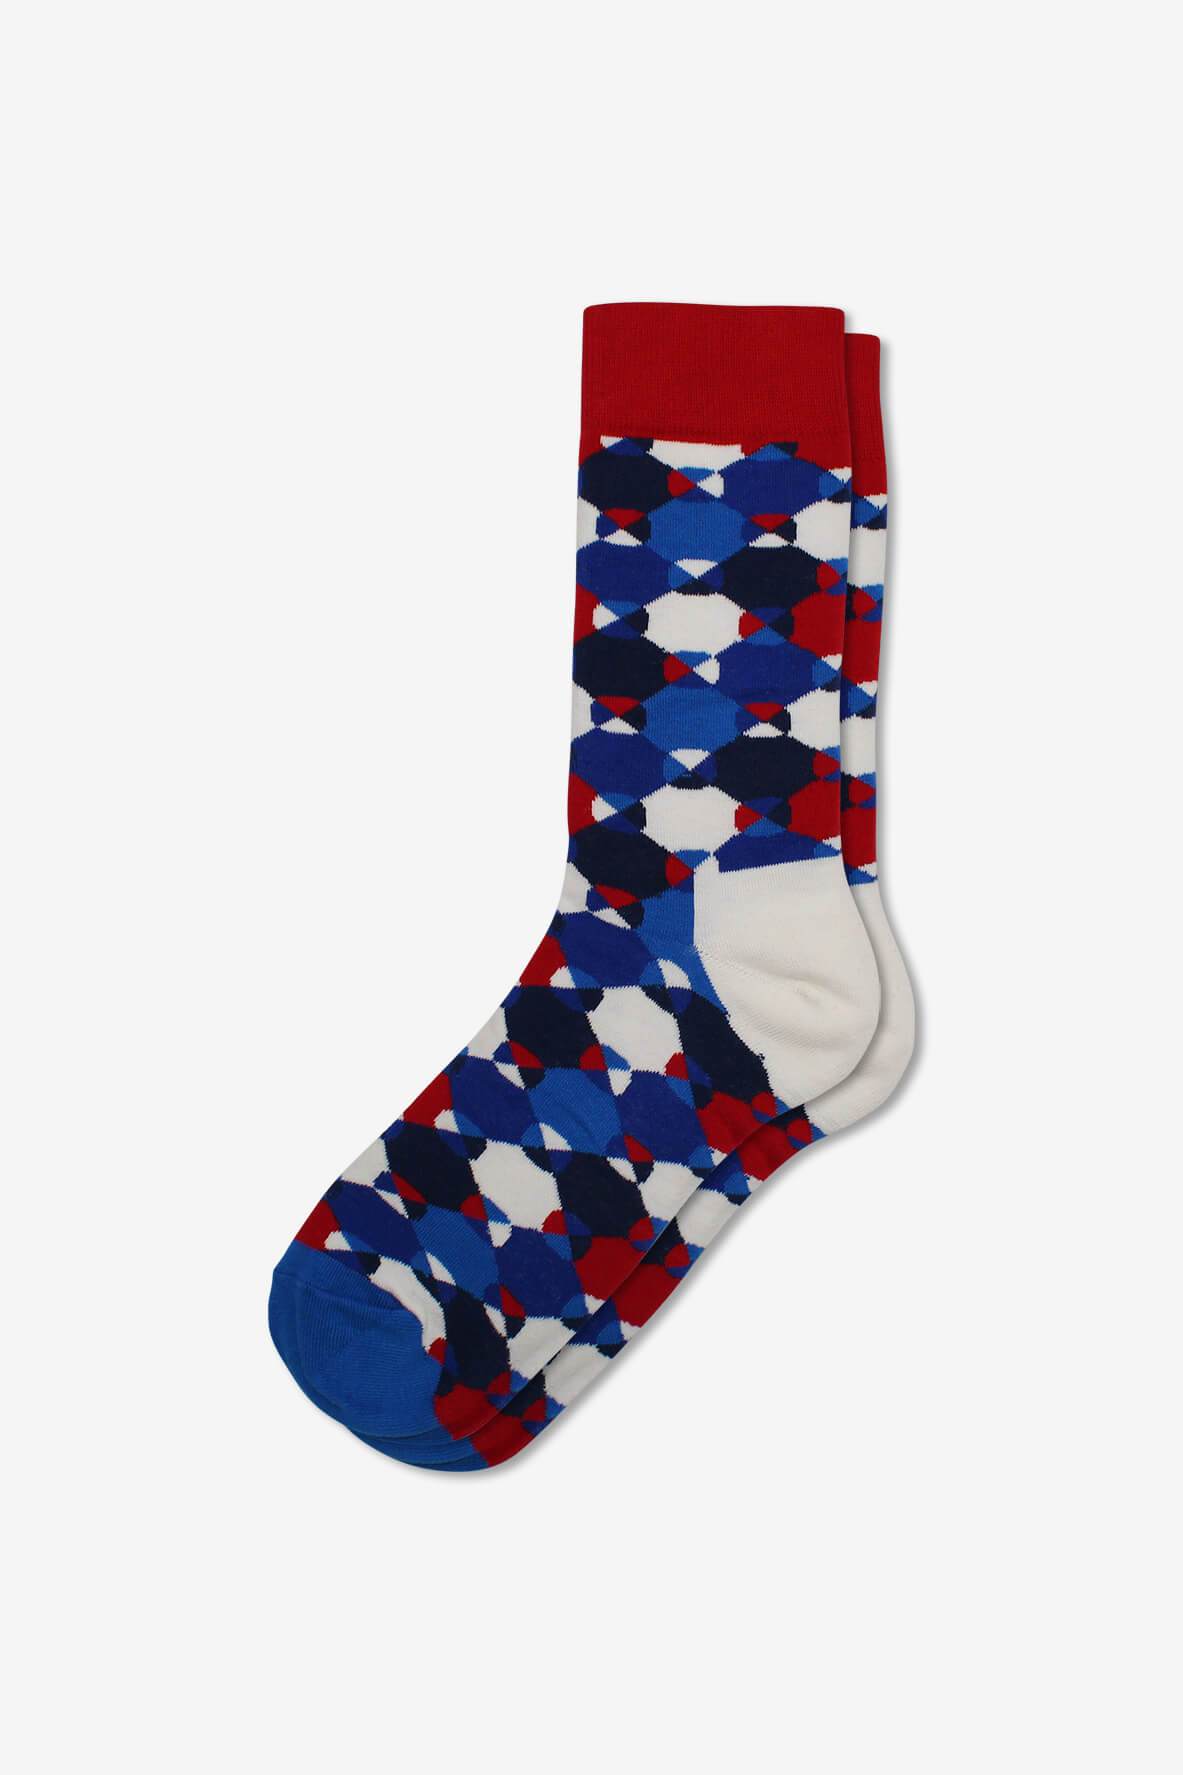 Socks IMG_5291, socks, GoTie